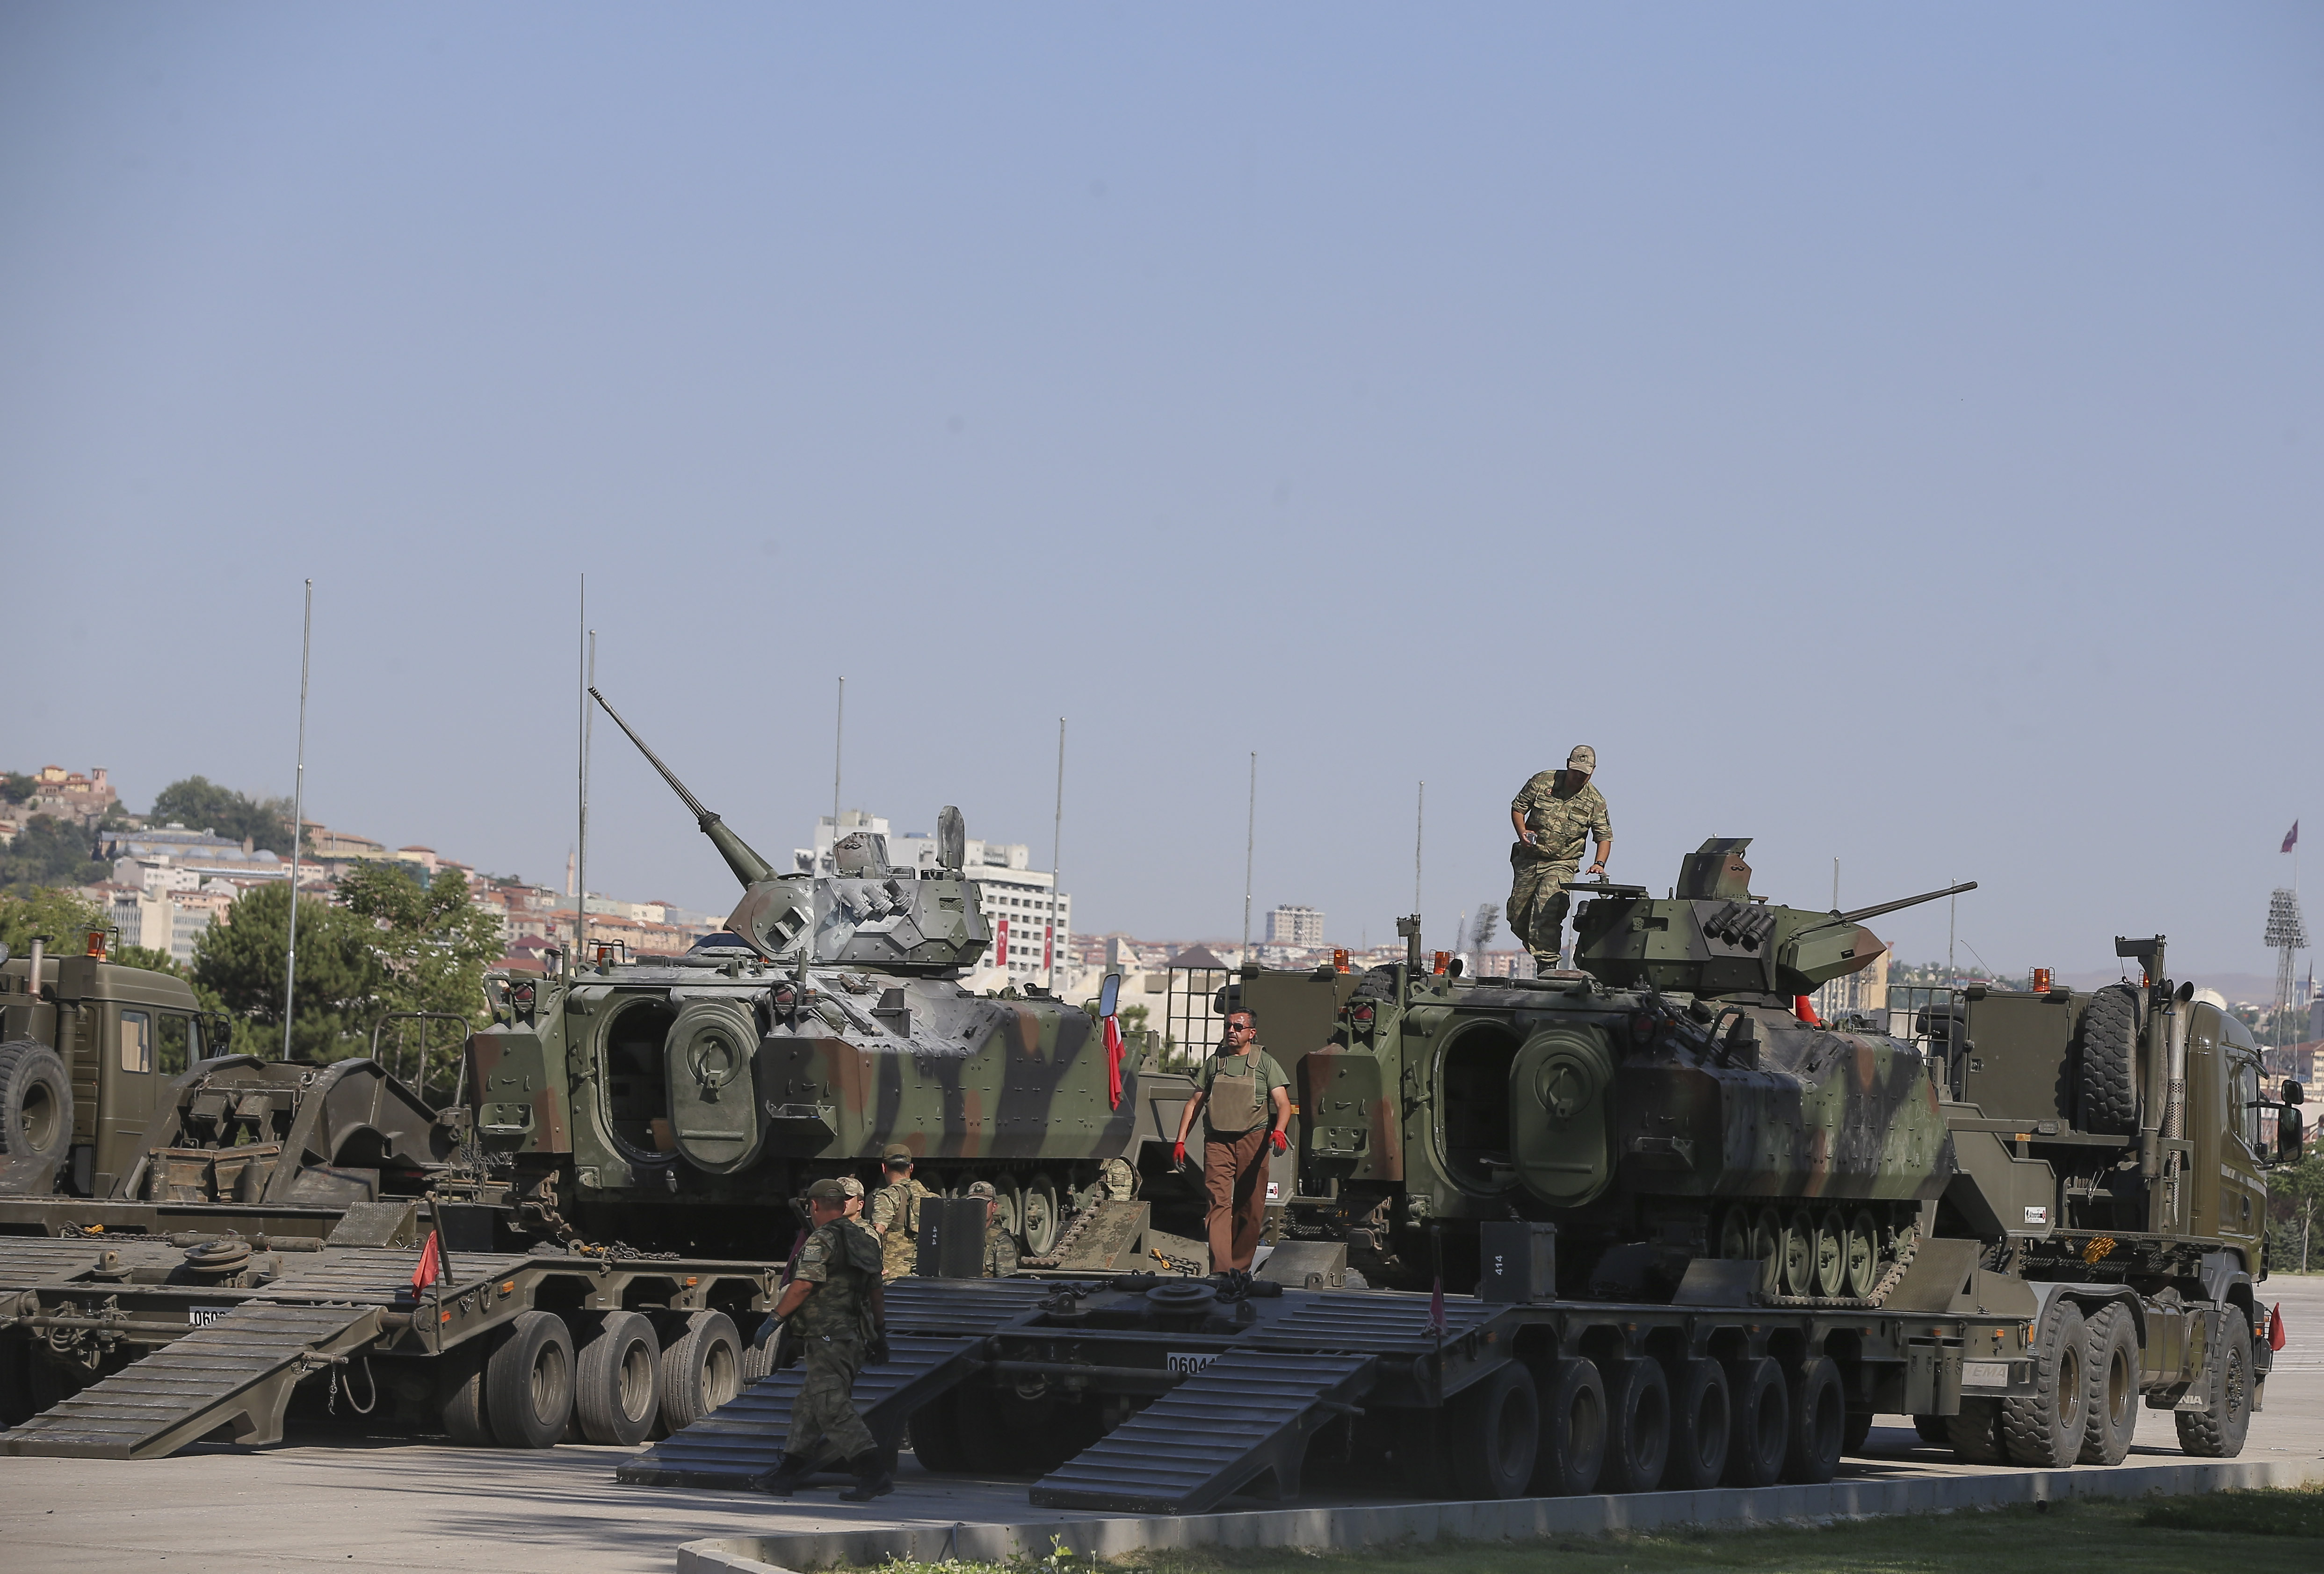 Örgüt mensuplarınca darbe girişiminde kullanılan Ankara Emniyet Müdürlüğü’nün bahçesindeki tanklar, askeri tırlarla kışlaya çekildi.